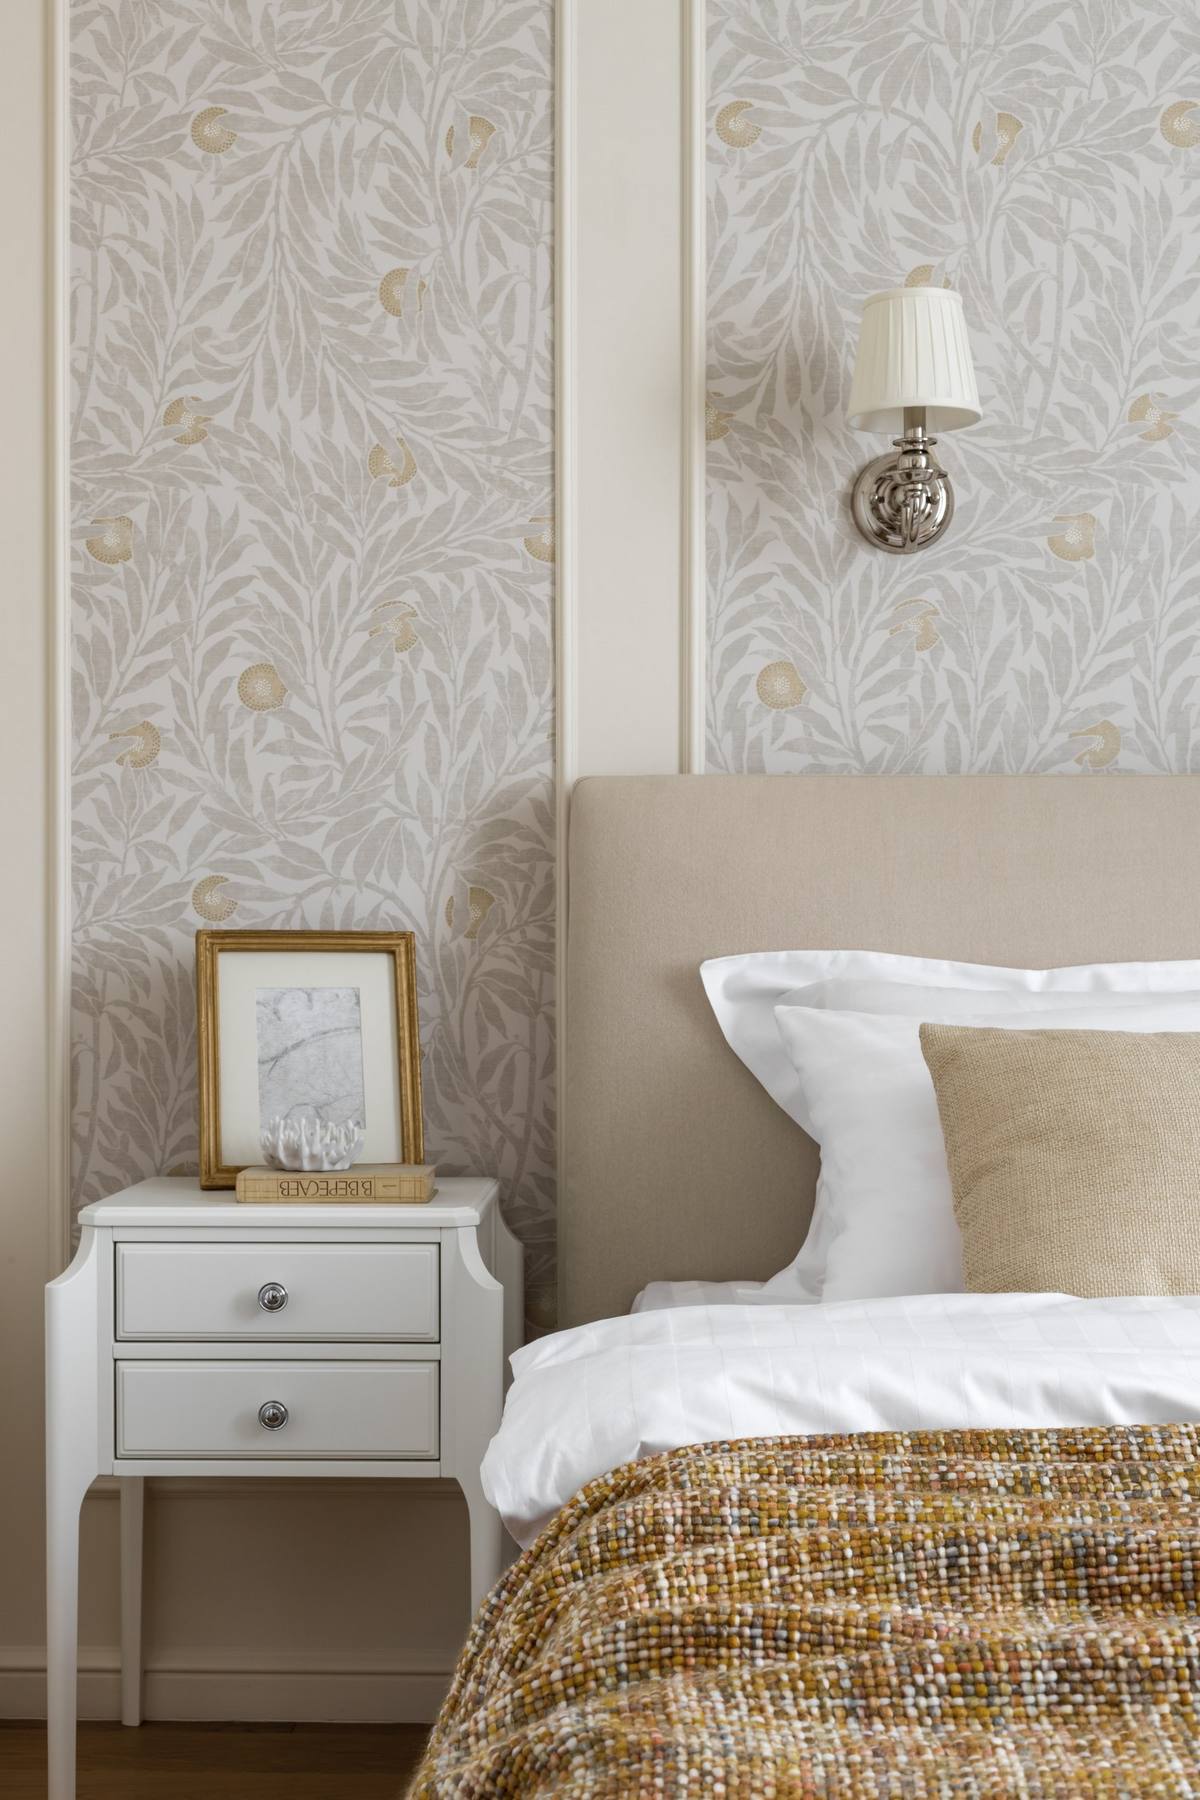 Phòng ngủ của cặp đôi được thiết kế đơn giản với giấy dán tường hoa văn trang nhã. Táp đầu giường cũng như đèn chiếu sáng gắn tường cũng được chọn lựa tinh tế cùng cách sắp đặt đối xứng.